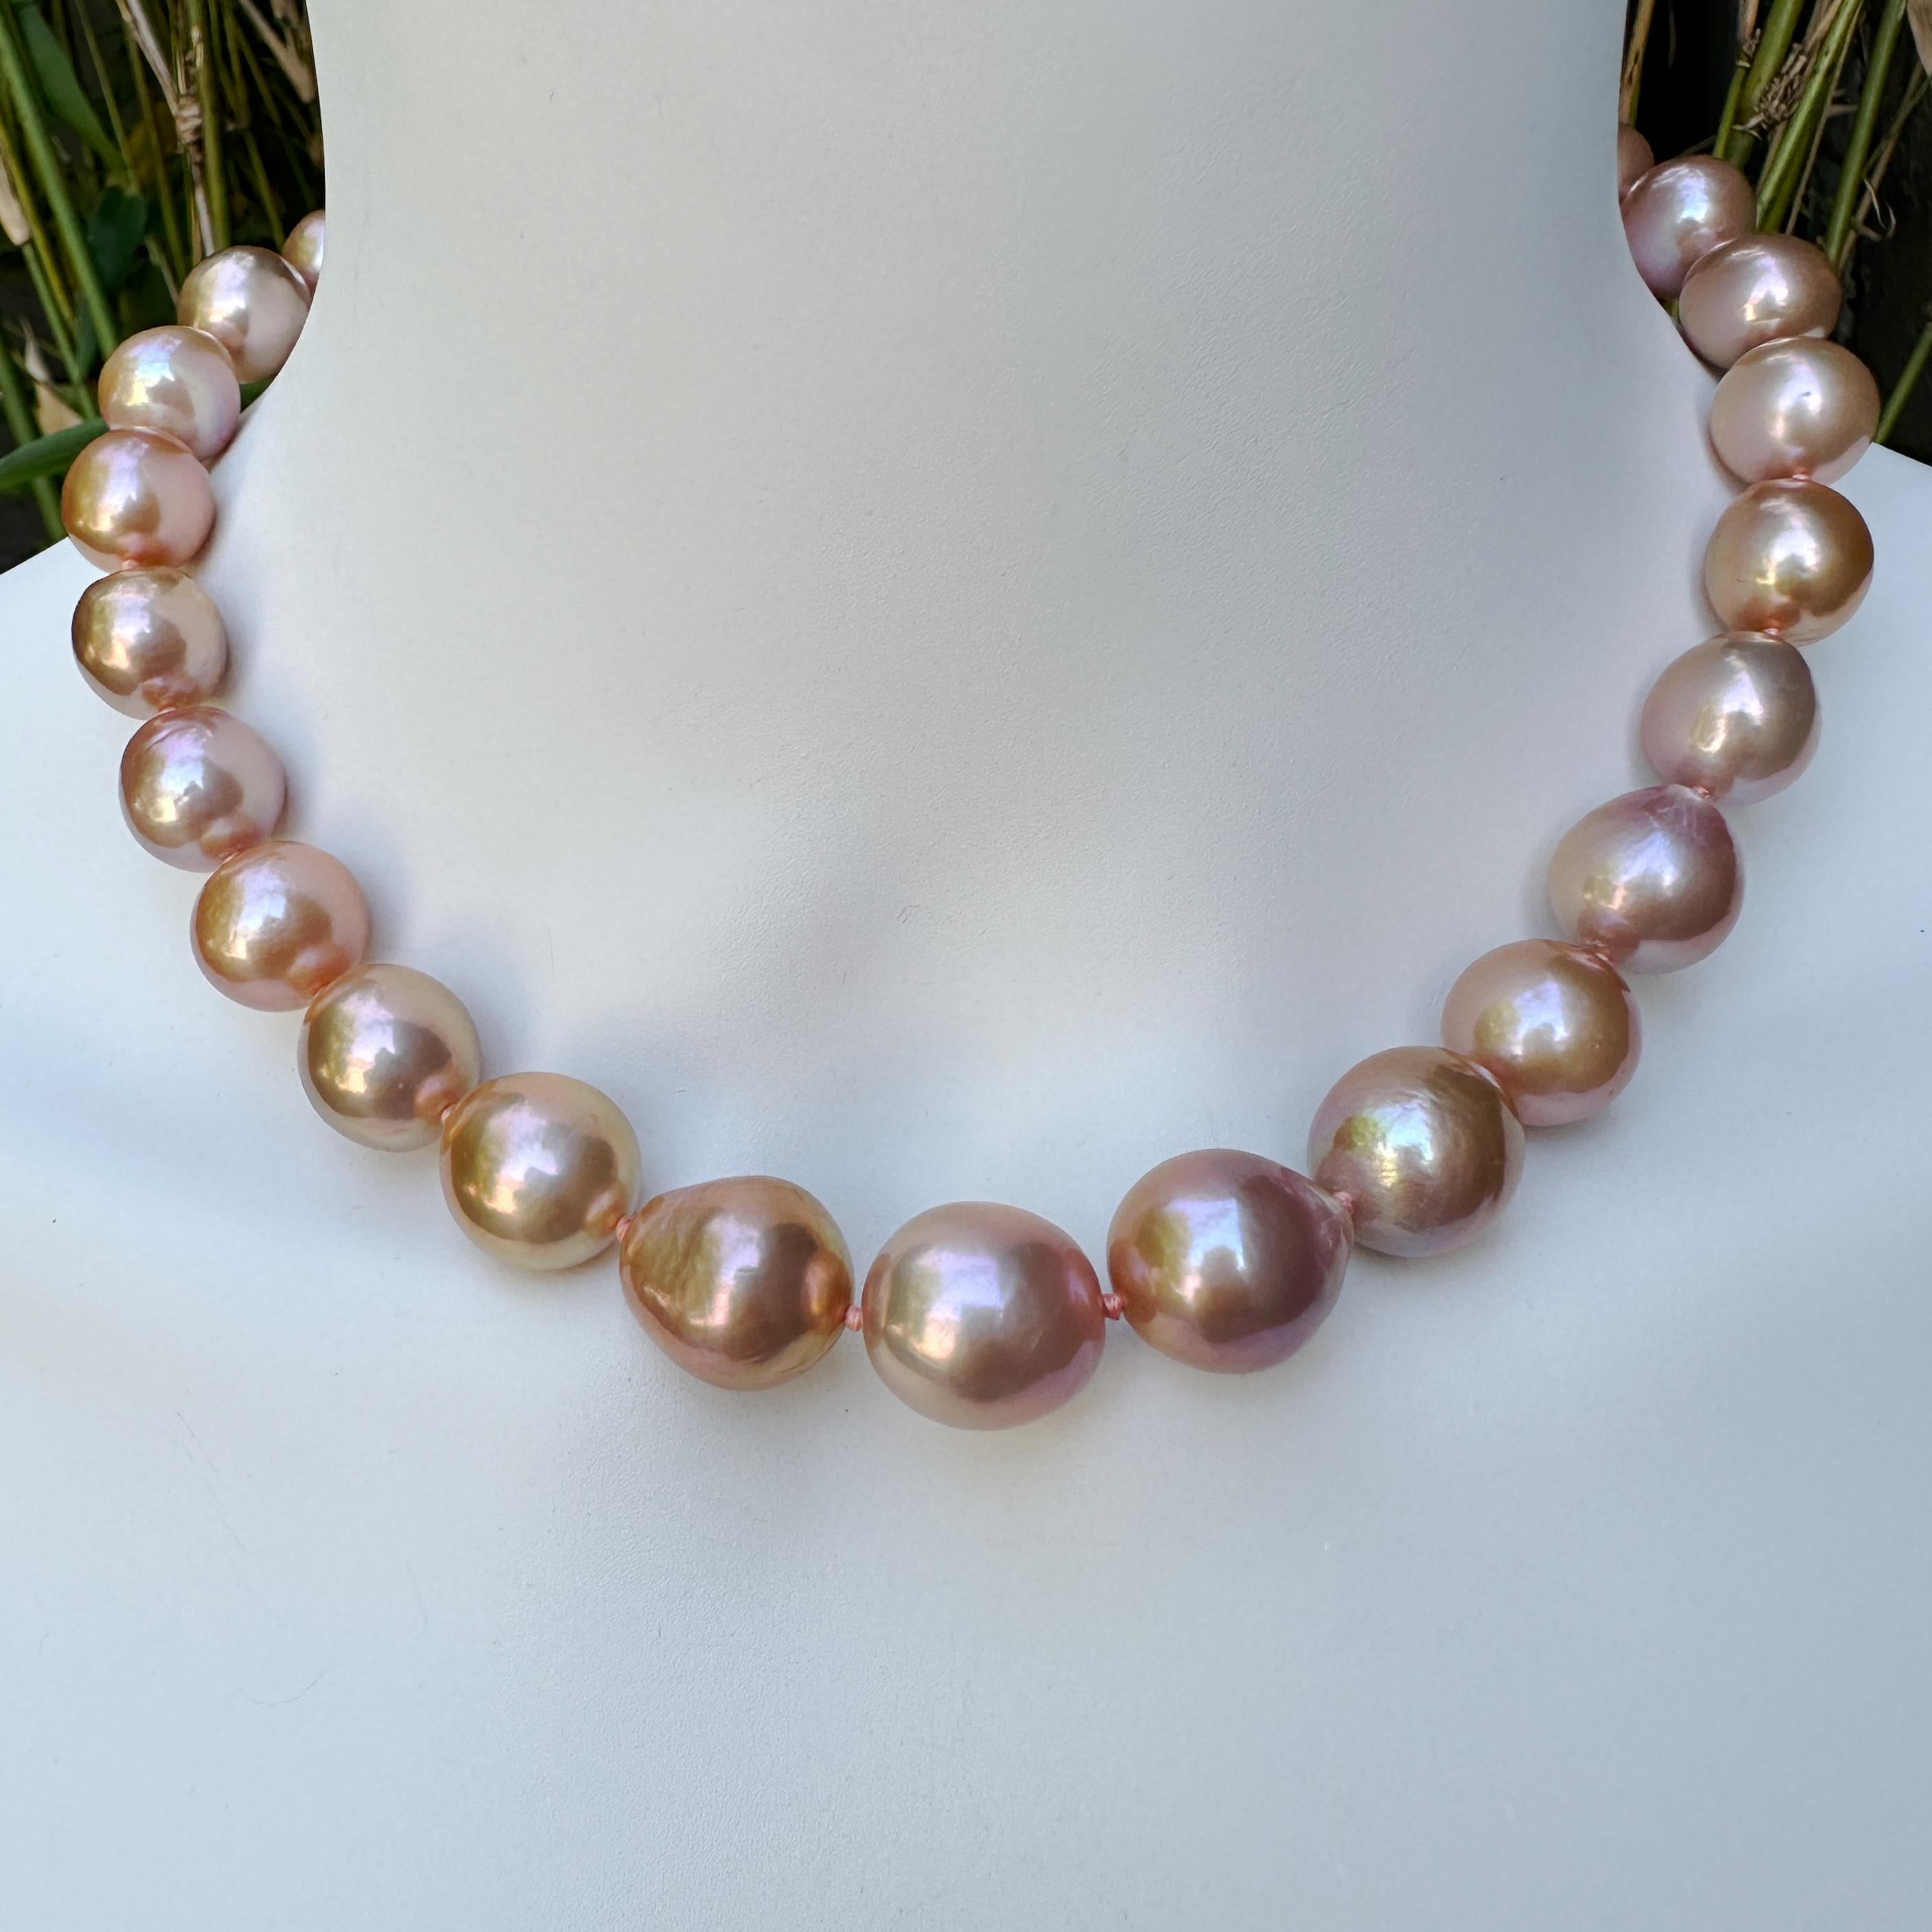 Edison-Perlen, eine Süßwasserperlenart, die es erst seit wenigen Jahren gibt, sind das Ergebnis mehrjähriger Forschung von Grace Pearls in China.    Mit Hilfe der Techniken, die für die Zucht von Salzwasserperlen verwendet werden, und durch